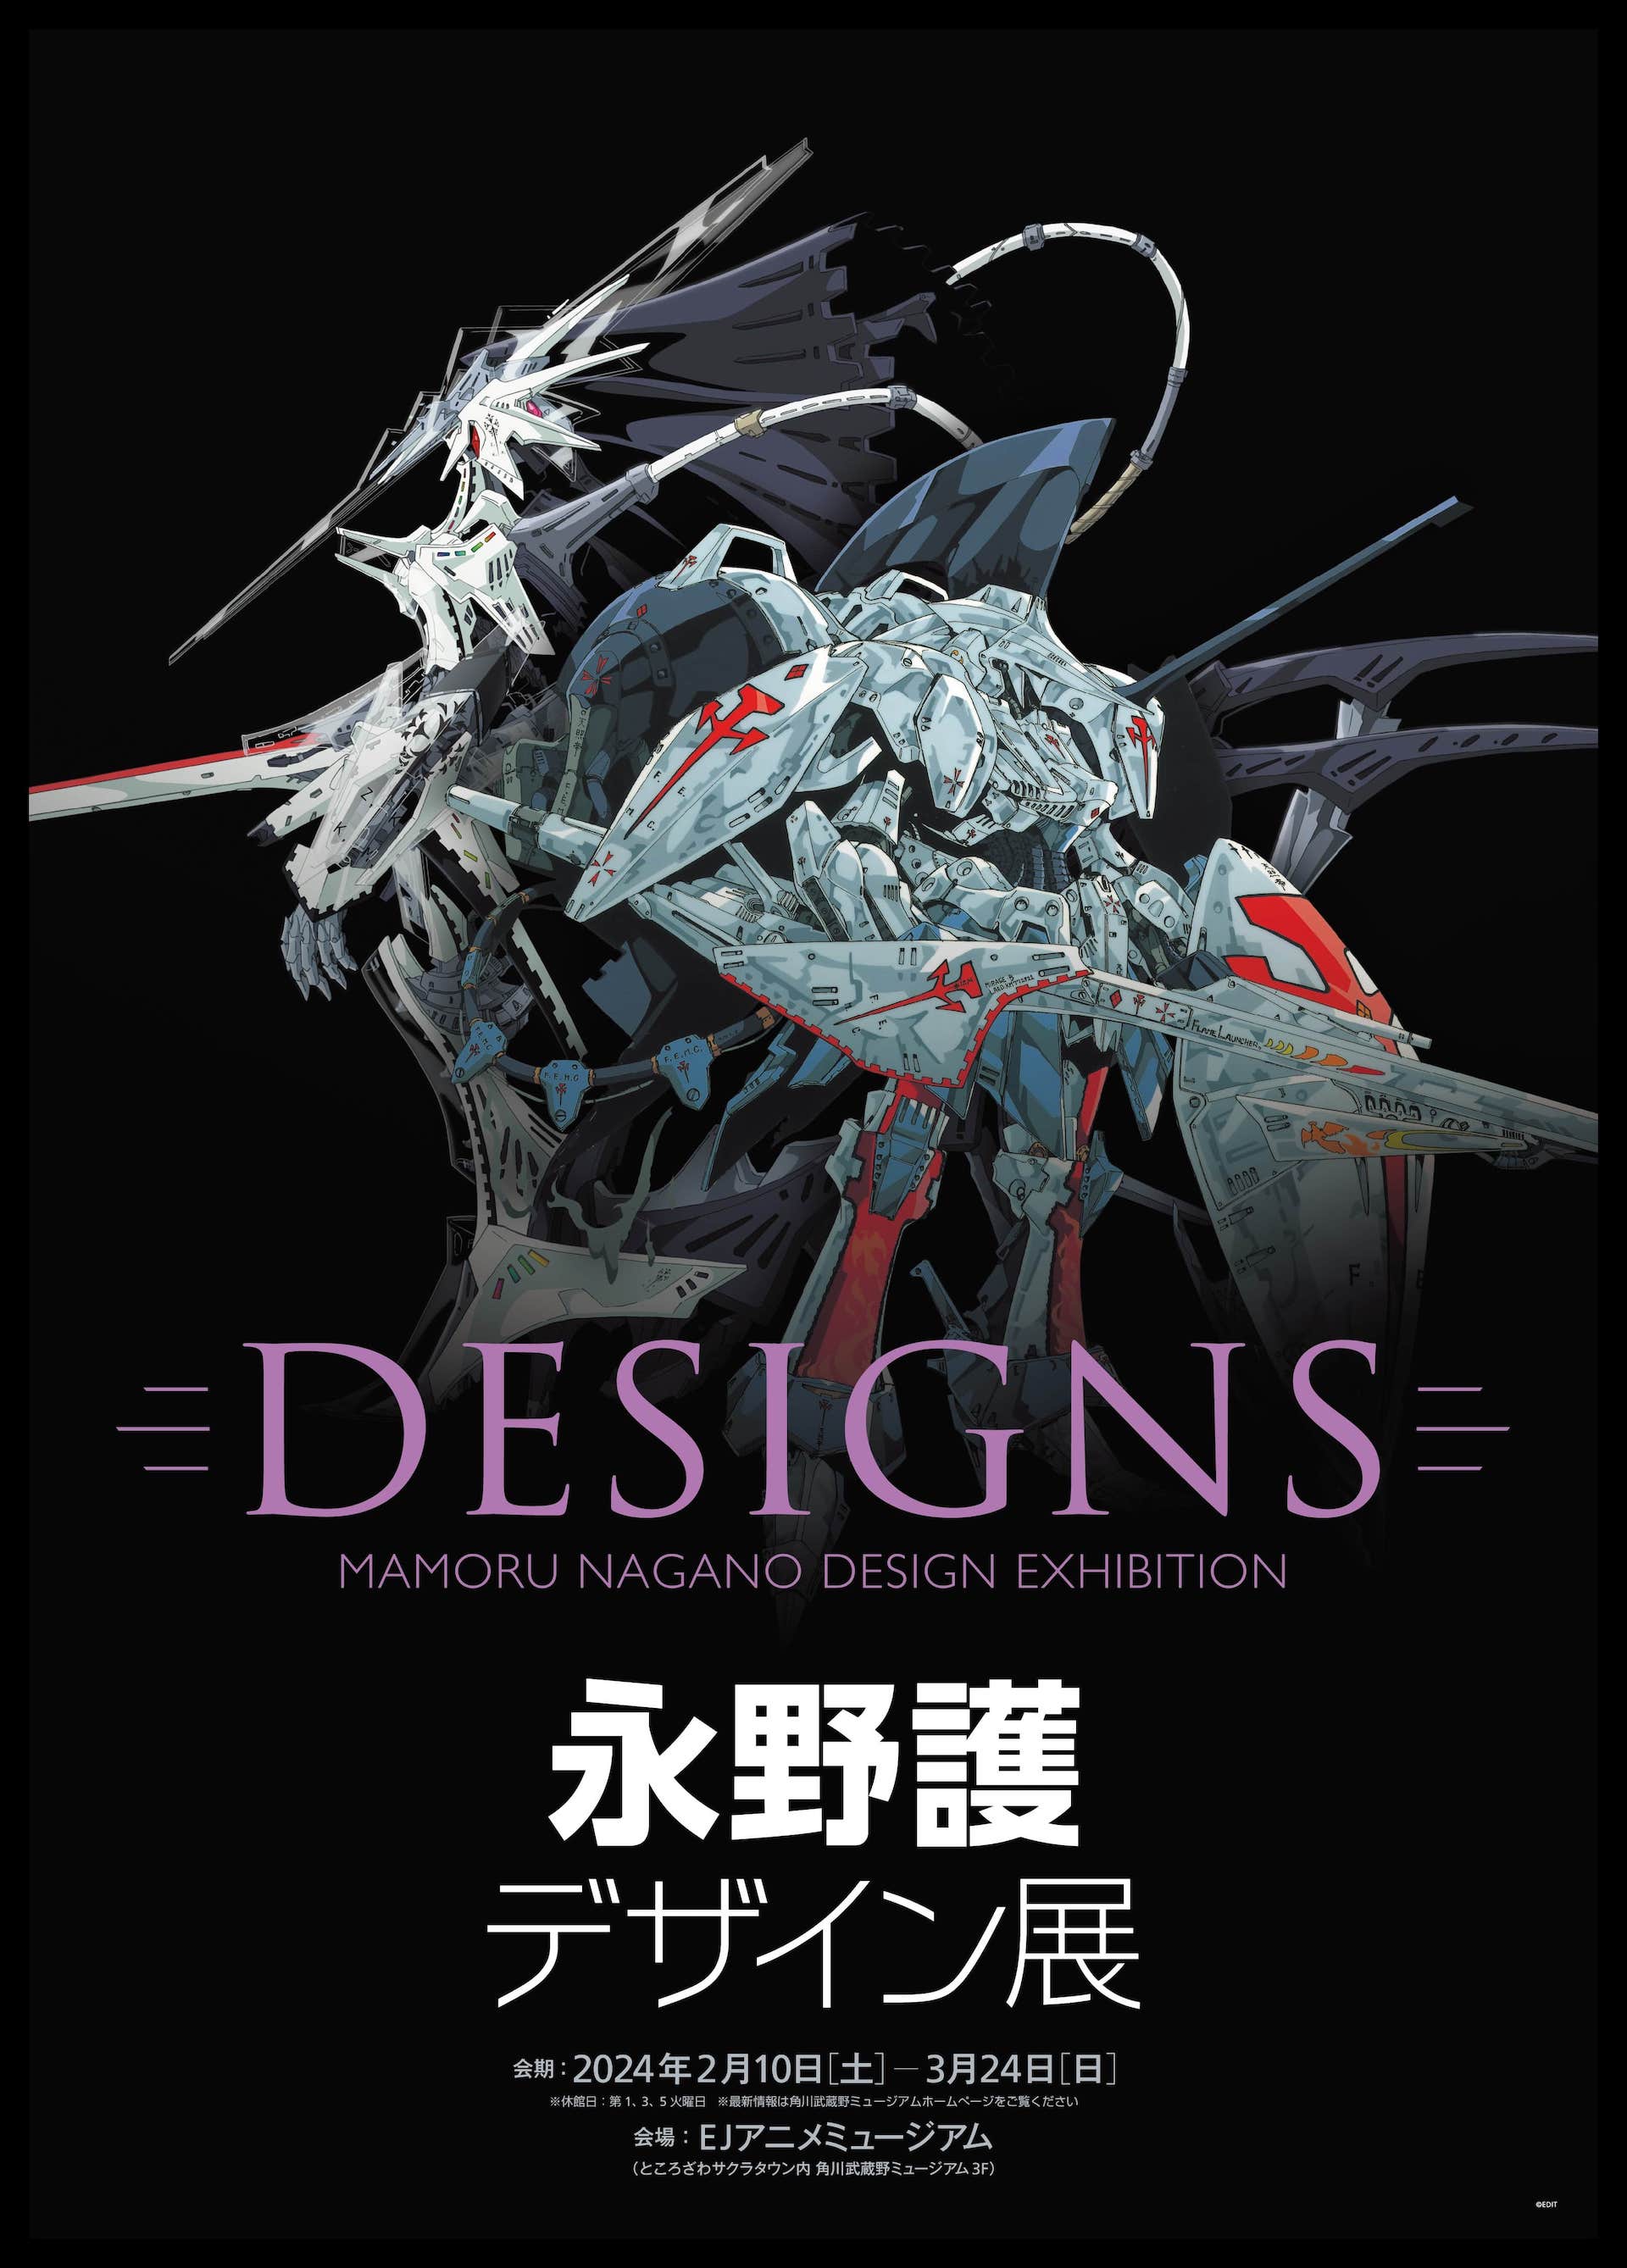 展覧会「DESIGNS 永野護デザイン展」が2024年2月10日より開催決定！ - GAME Watch